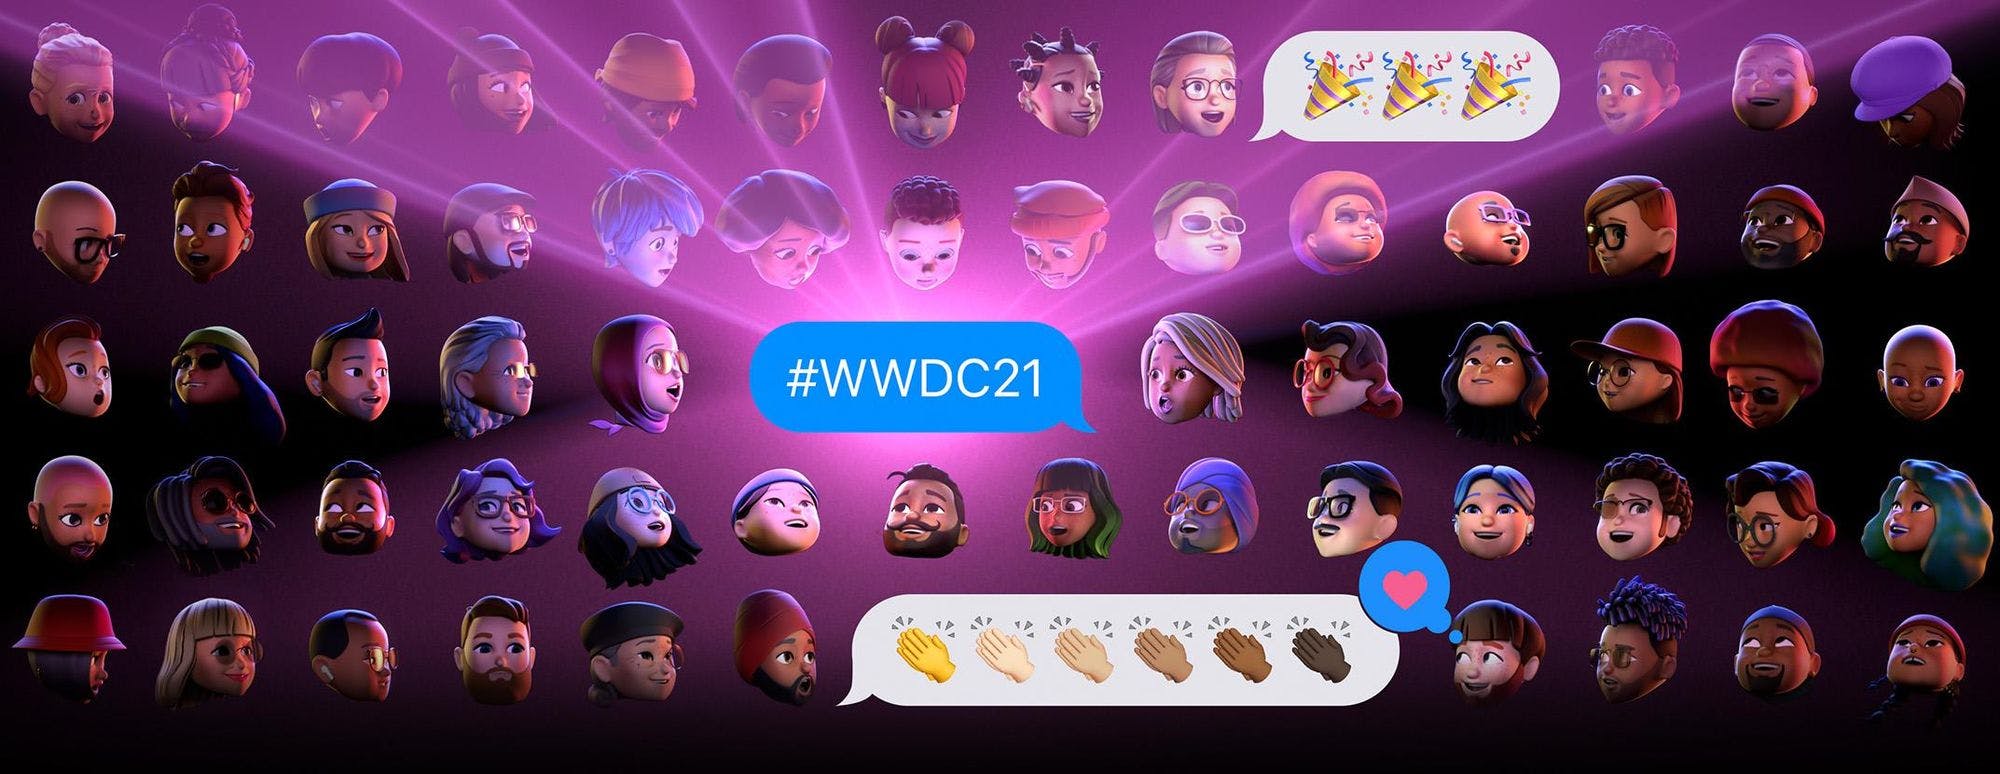 #WWDC21